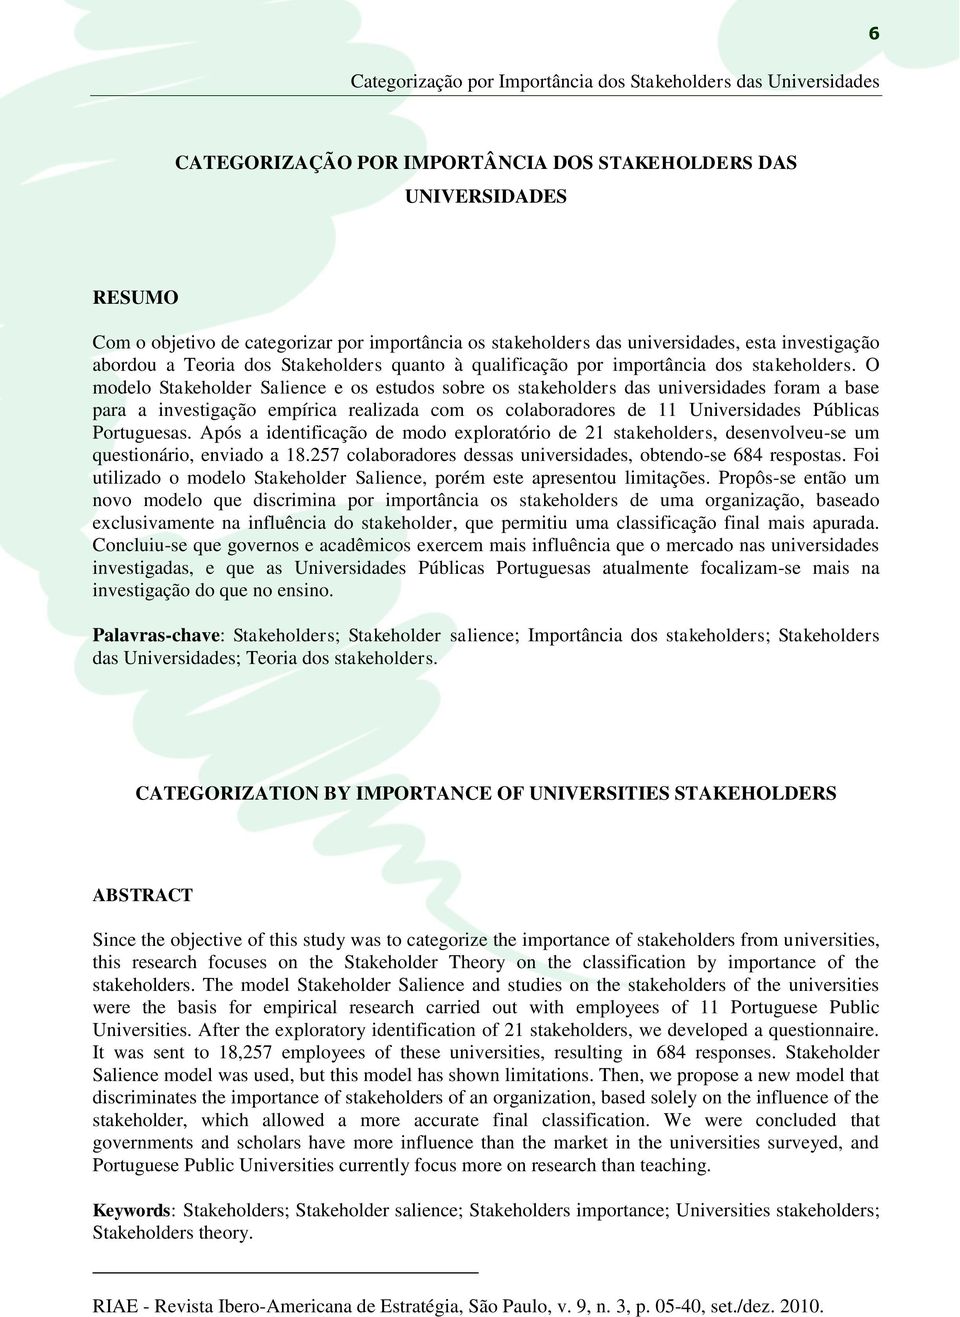 O modelo Stakeholder Salience e os estudos sobre os stakeholders das universidades foram a base para a investigação empírica realizada com os colaboradores de 11 Universidades Públicas Portuguesas.